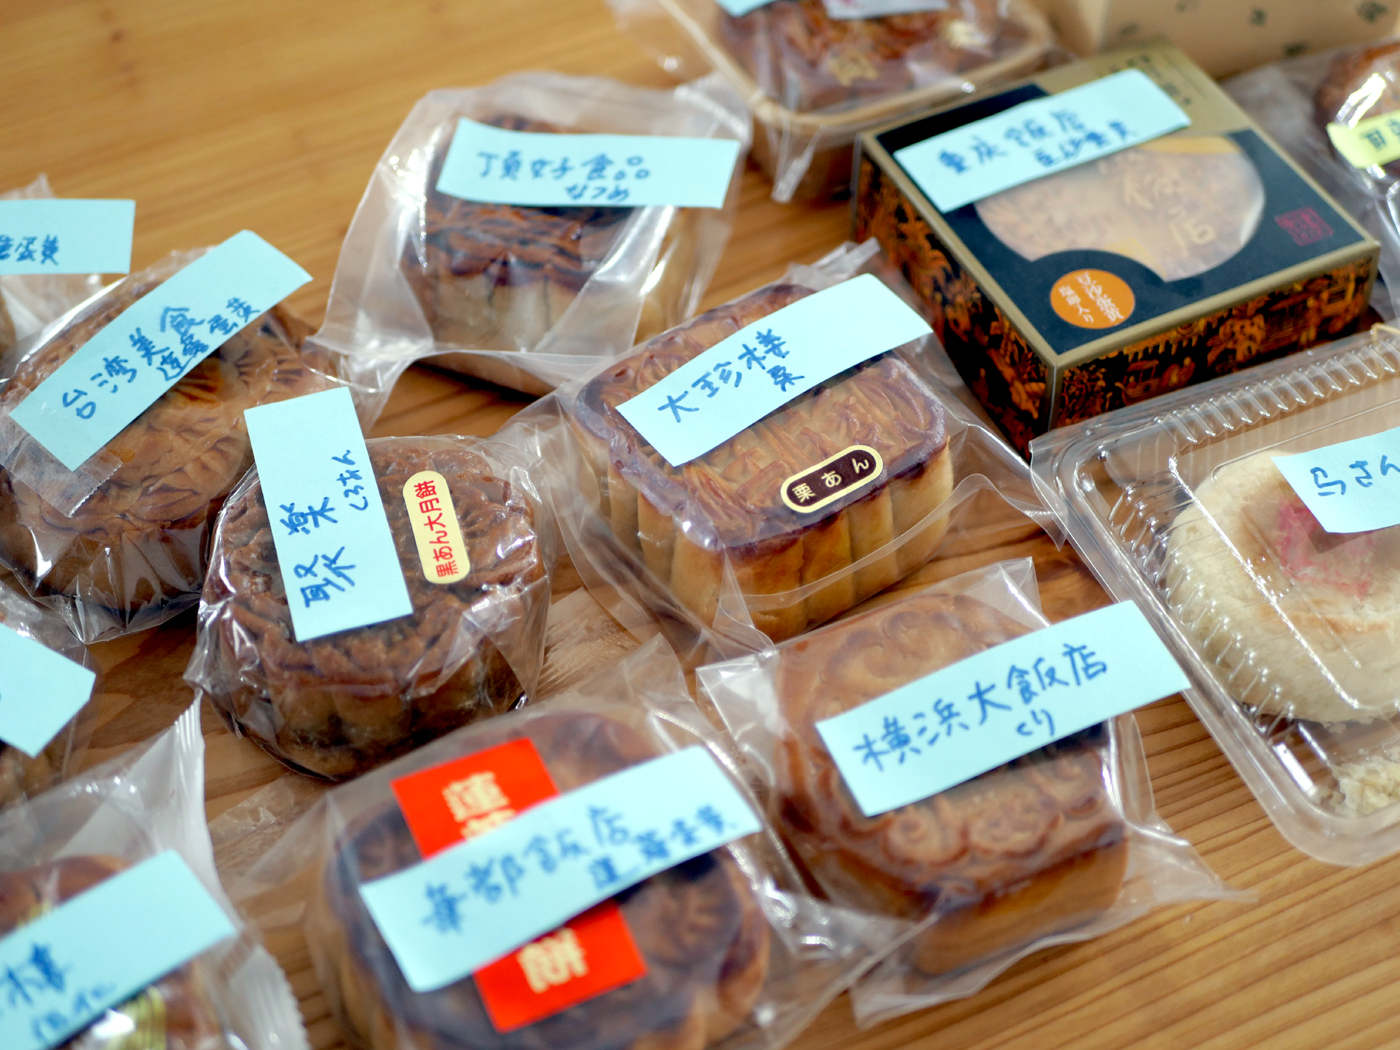 トータル1万kcal超 マイベスト月餅はこれだ 横浜オールド中華探訪24 中秋節スペシャル企画 80c